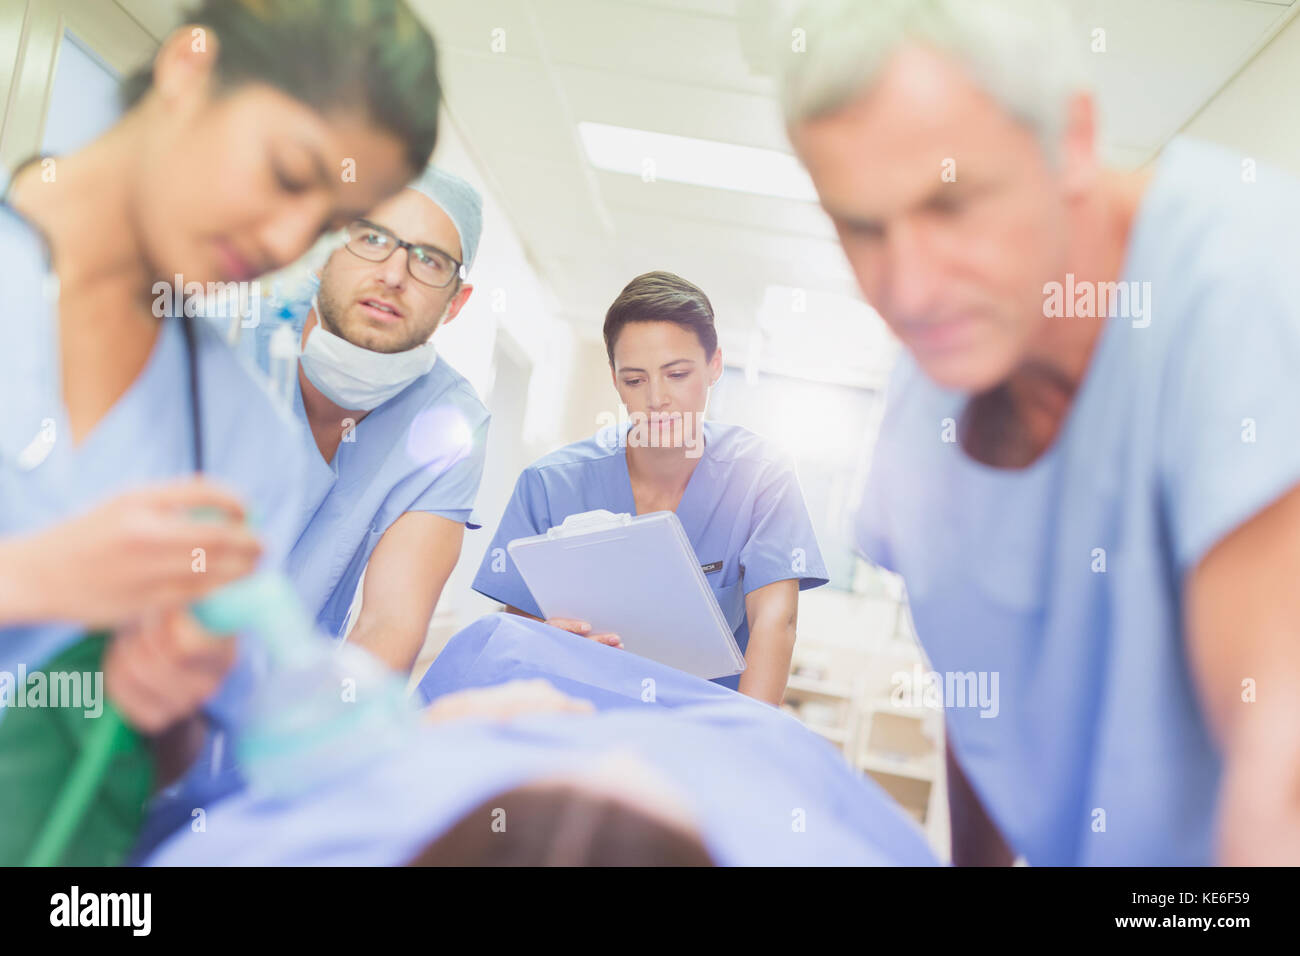 Chirurgen mit Zwischenablage schieben Patienten auf Trage im Krankenhaus Korridor Stockfoto